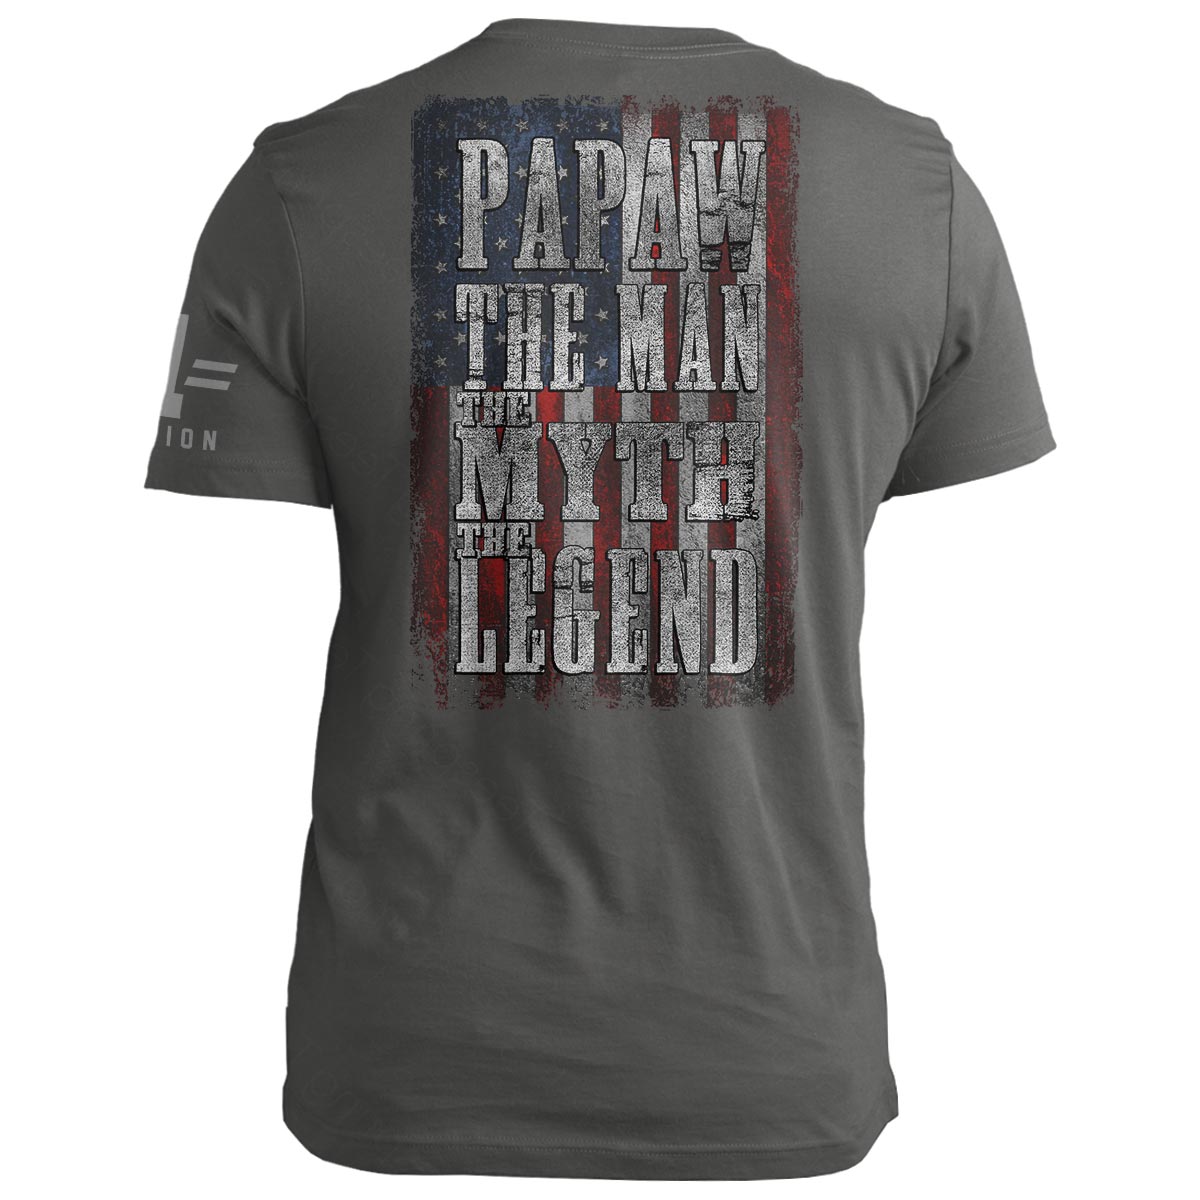 PAPAW: Man Myth Legend